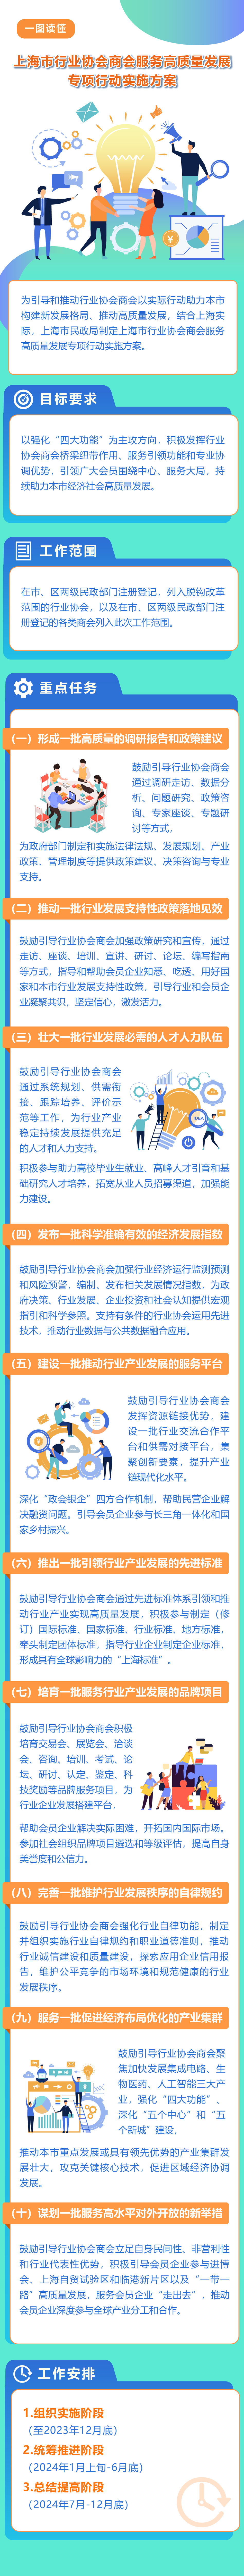 一图读懂《上海市行业协会商会服务高质量发展专项行动实施方案》-01.png